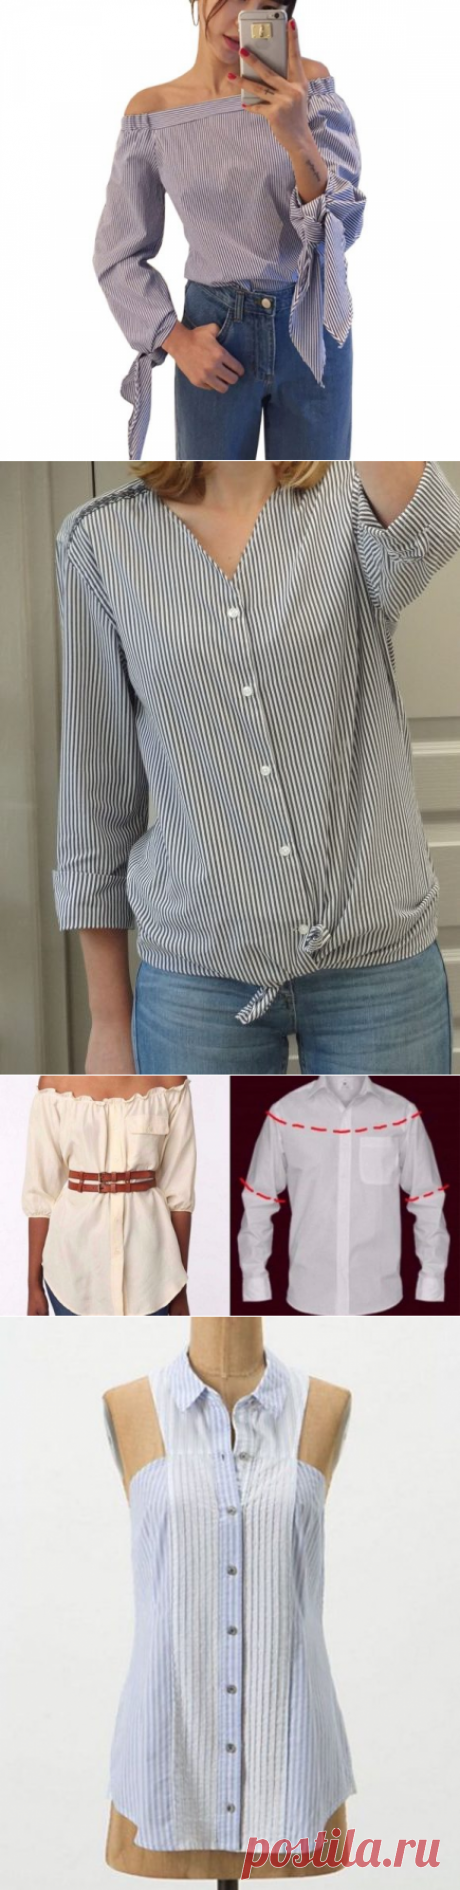 Переделка мужской рубашки: стильные блузки и топы за несколько минут, подборка идей с фото